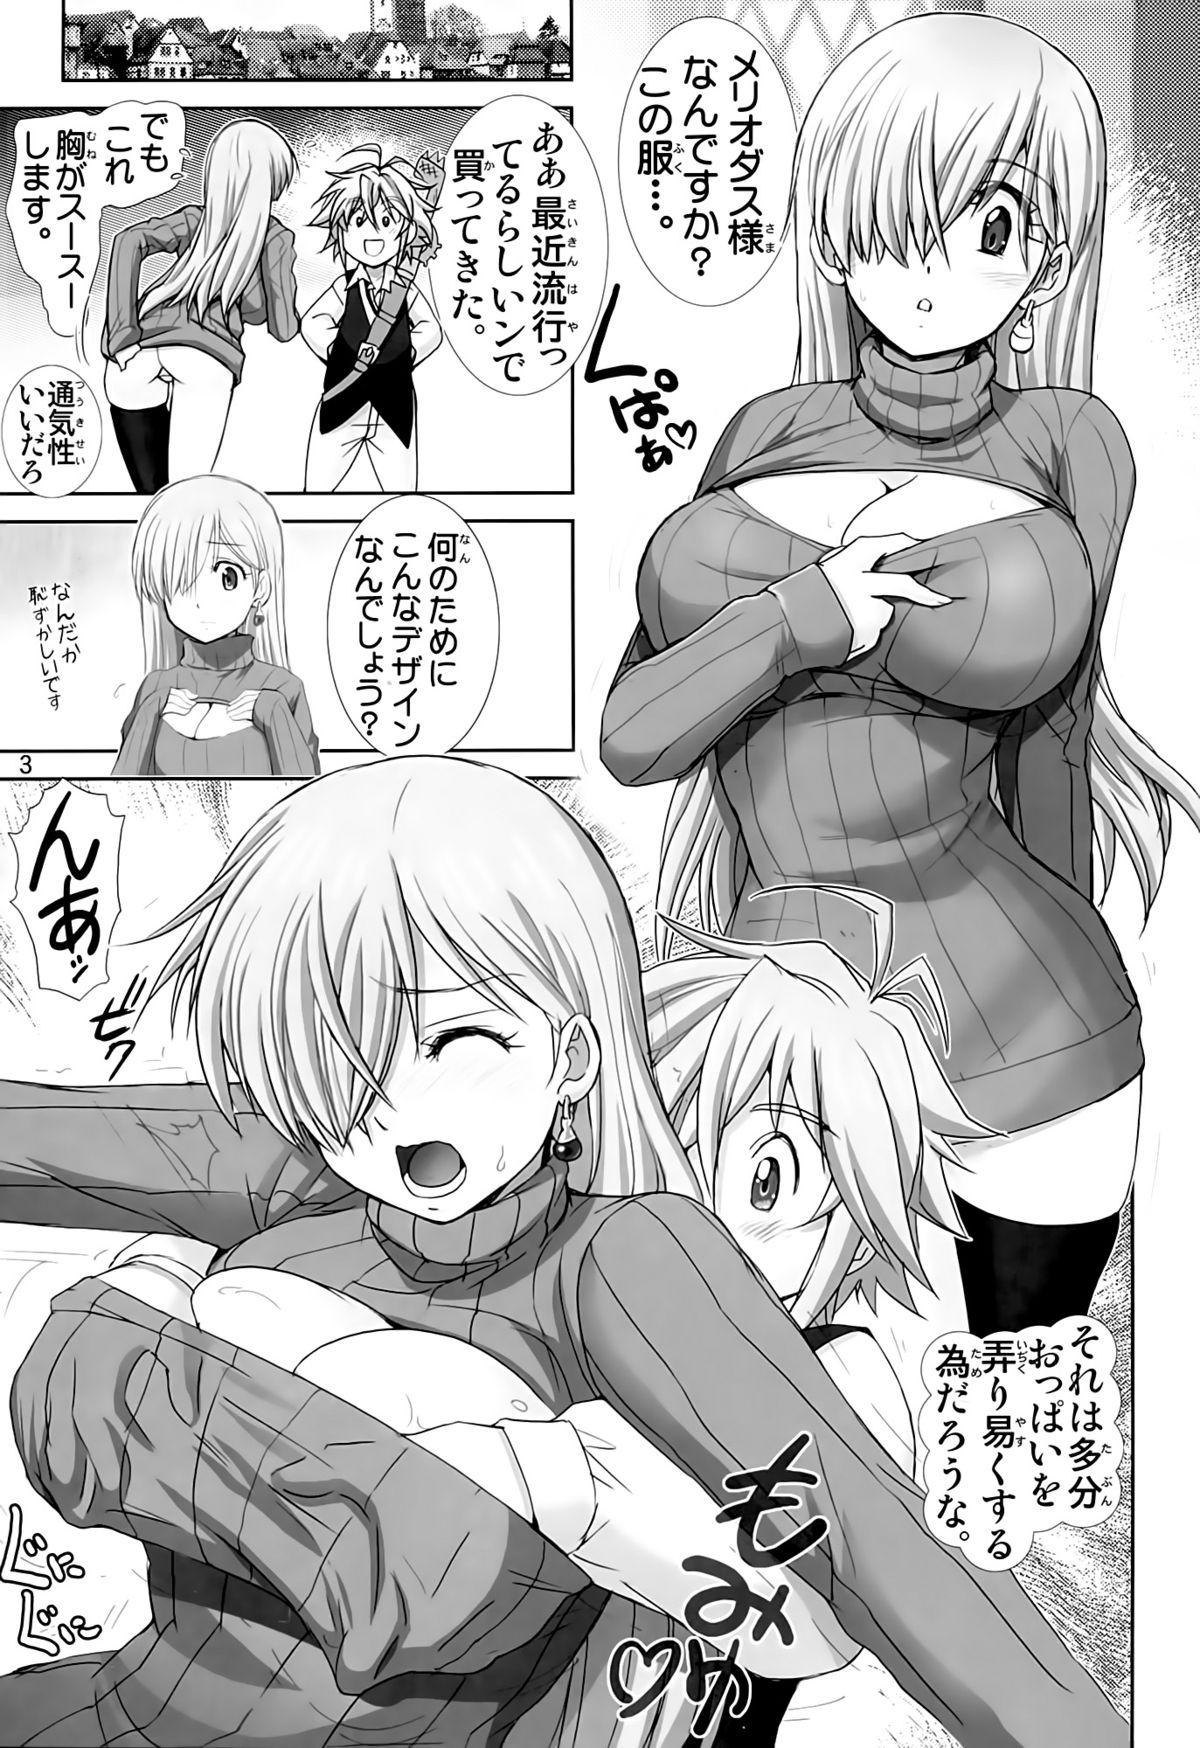 Cam Girl Elizabeth ni Rei no Sweater Kisete mita - Nanatsu no taizai Nice Tits - Page 2